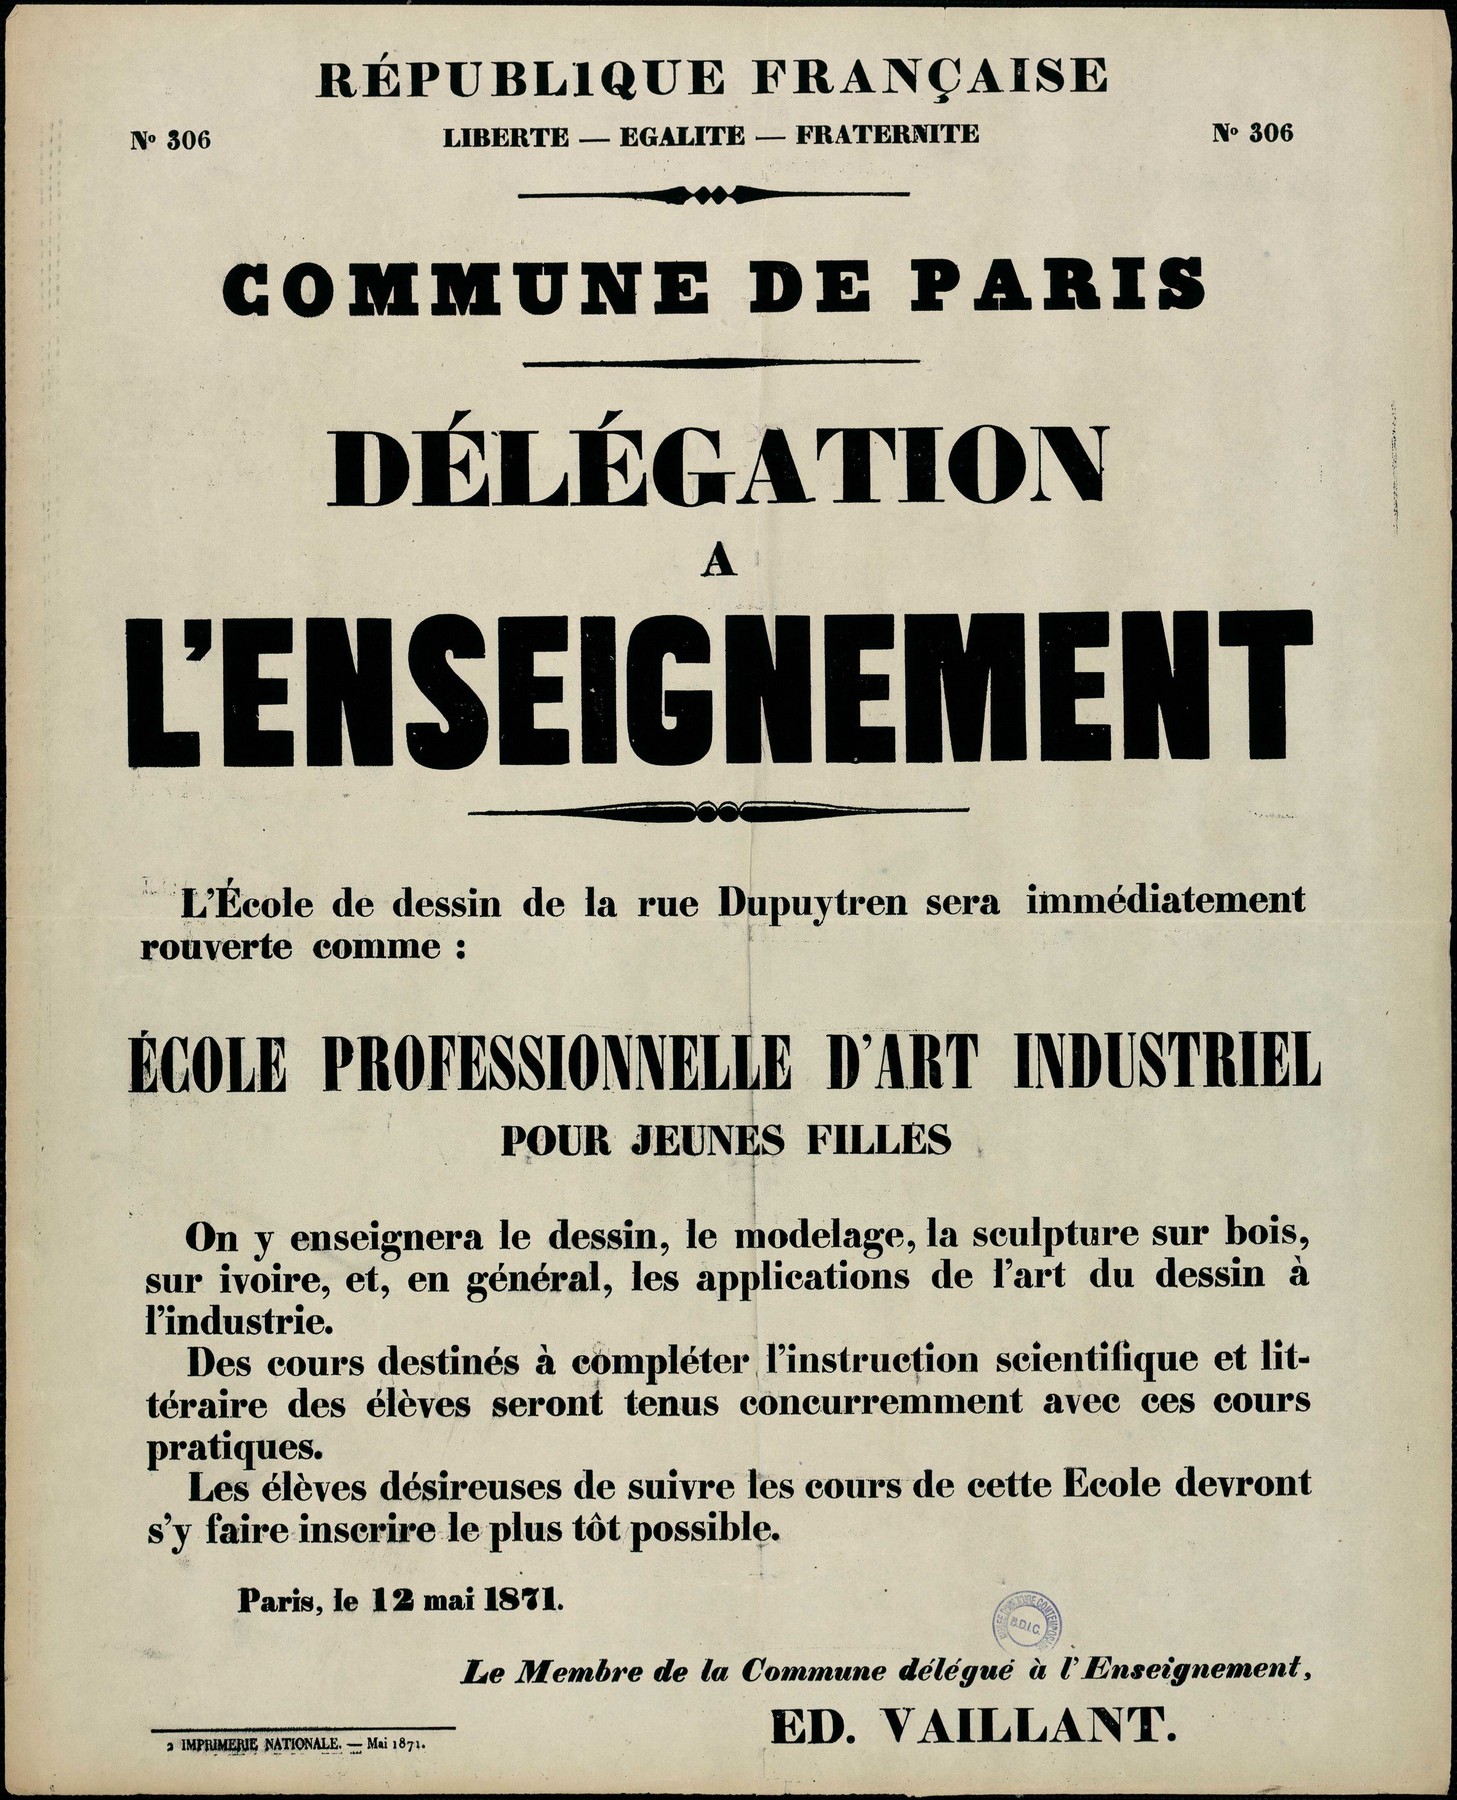 Affiche de la Commune de Paris N° 306 du 12 mai 1871 : Délégation à l’enseignement, signée É. Vaillant (source : La Contemporaine – Nanterre / argonnaute.parisnanterre.fr)